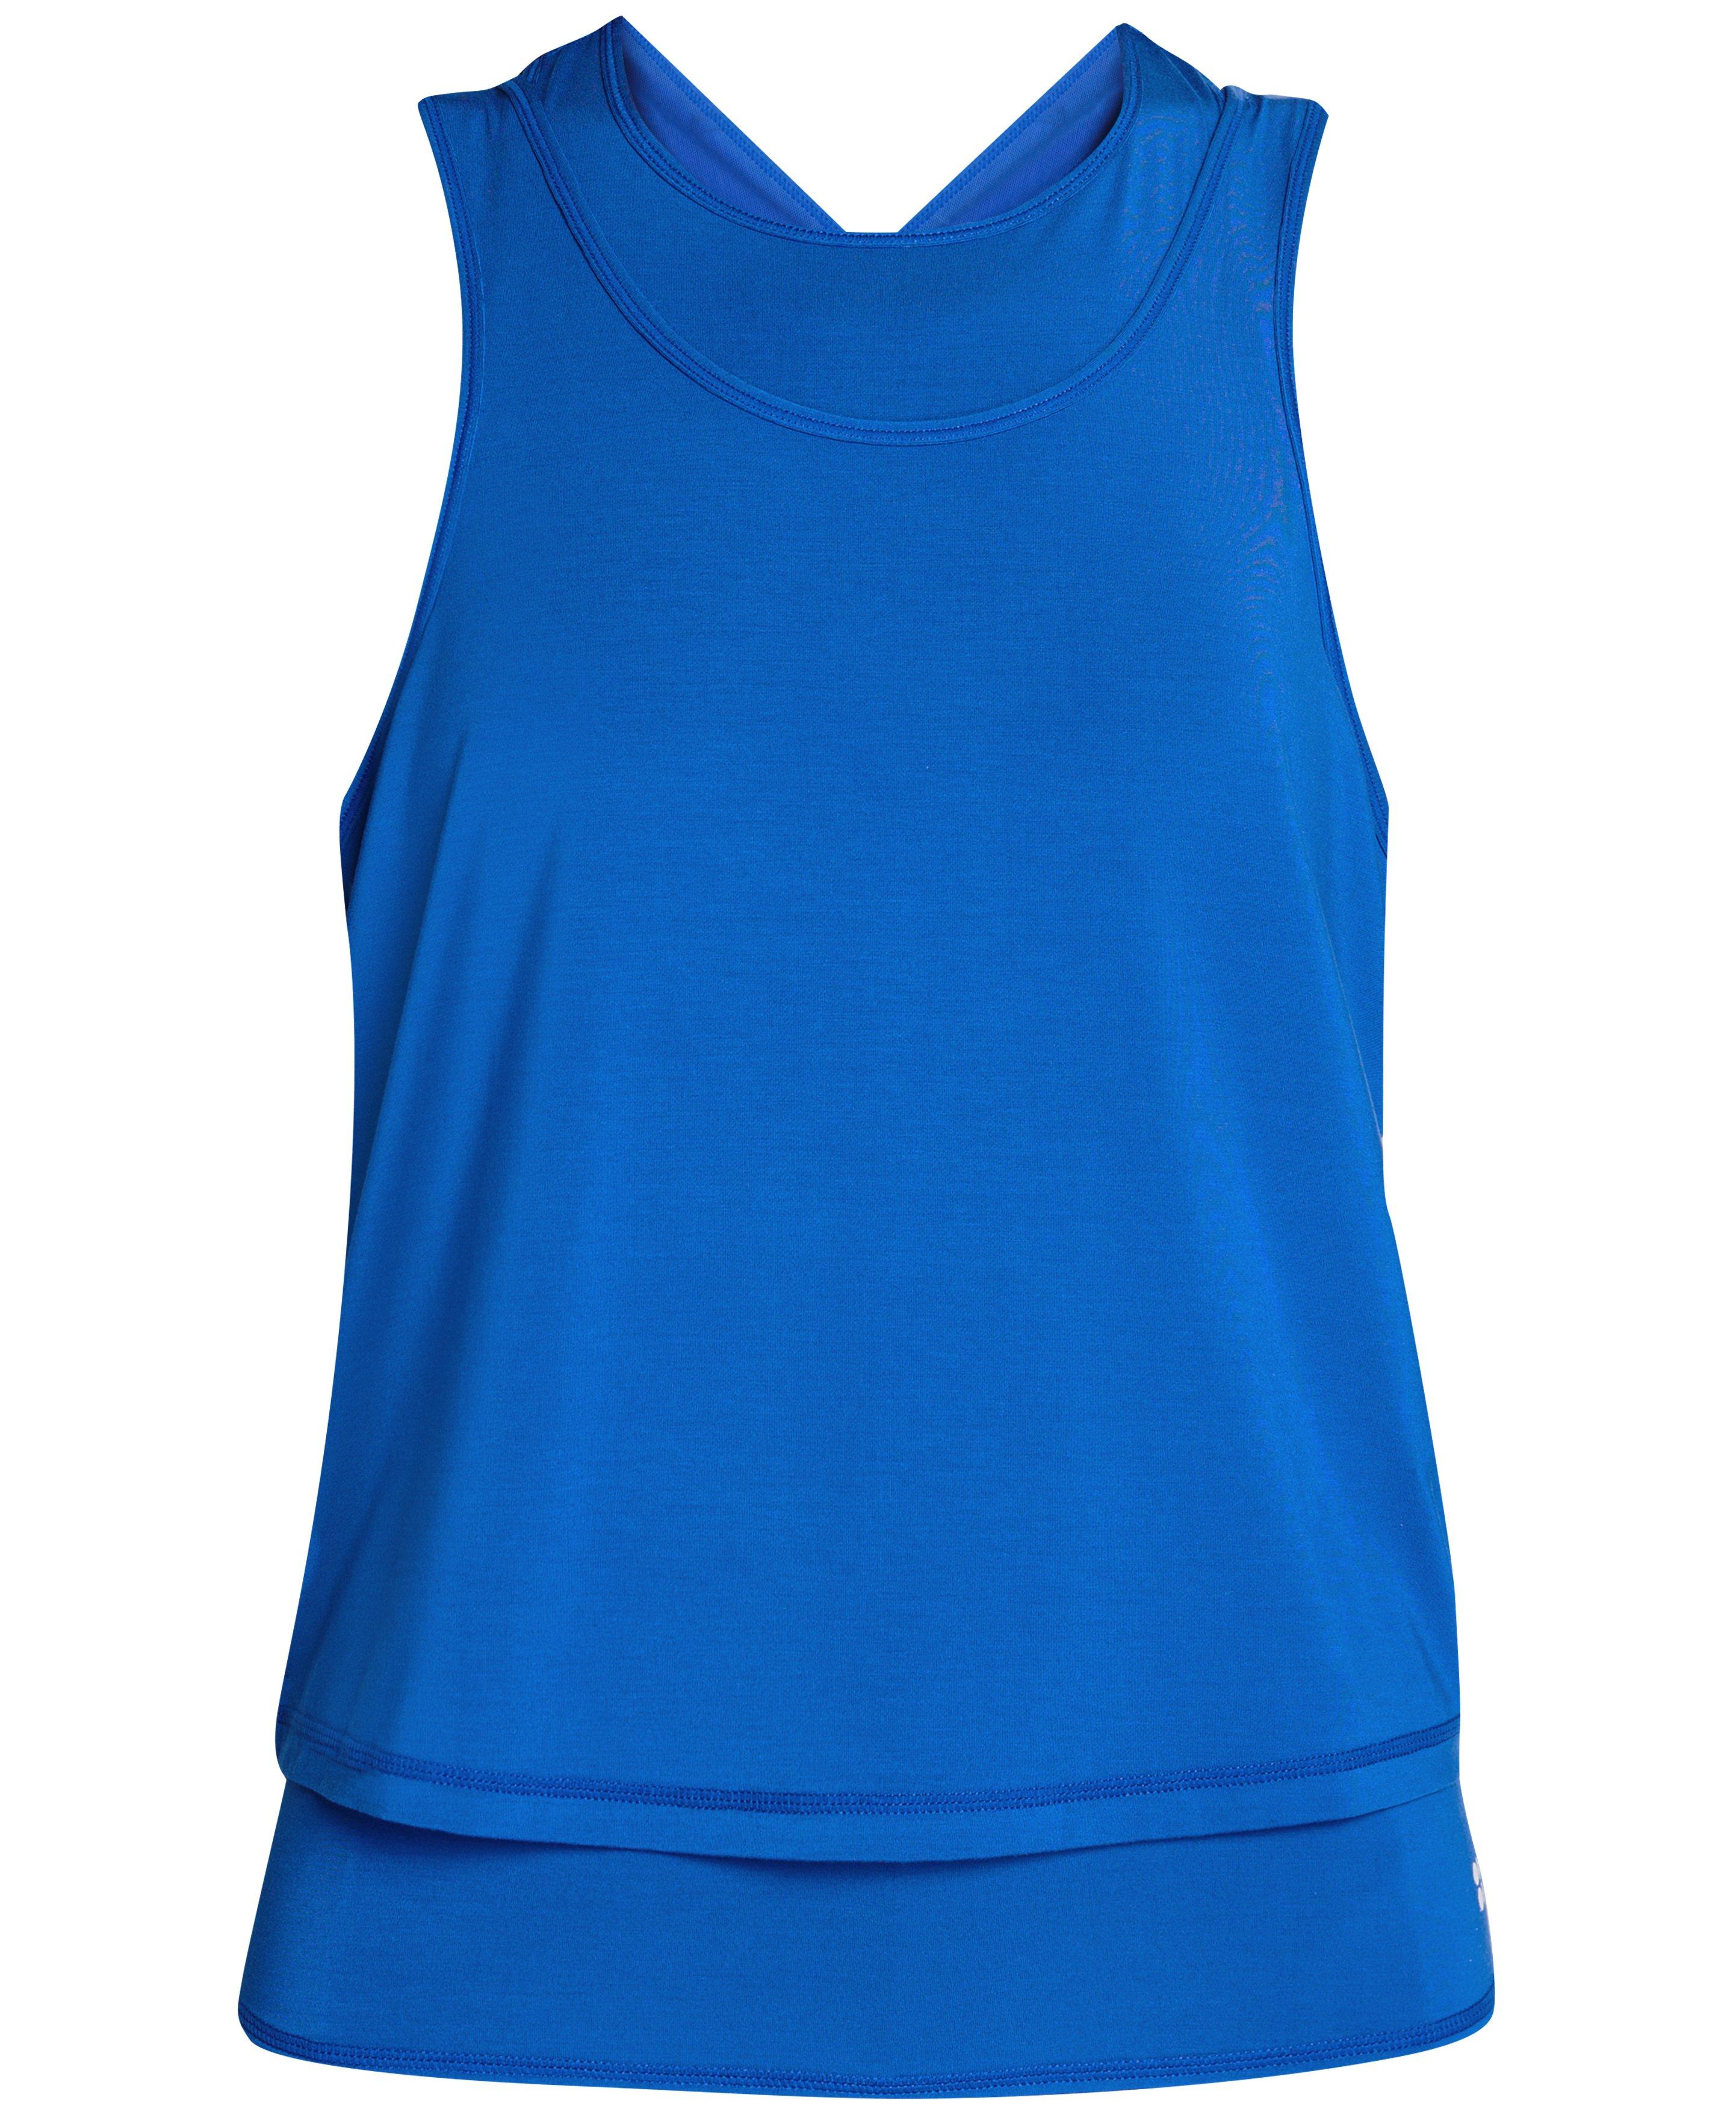 Blue, Womens Roxy Singlets & Tank Tops Sweet Pic A Muscle Tank Top Dress  Blues